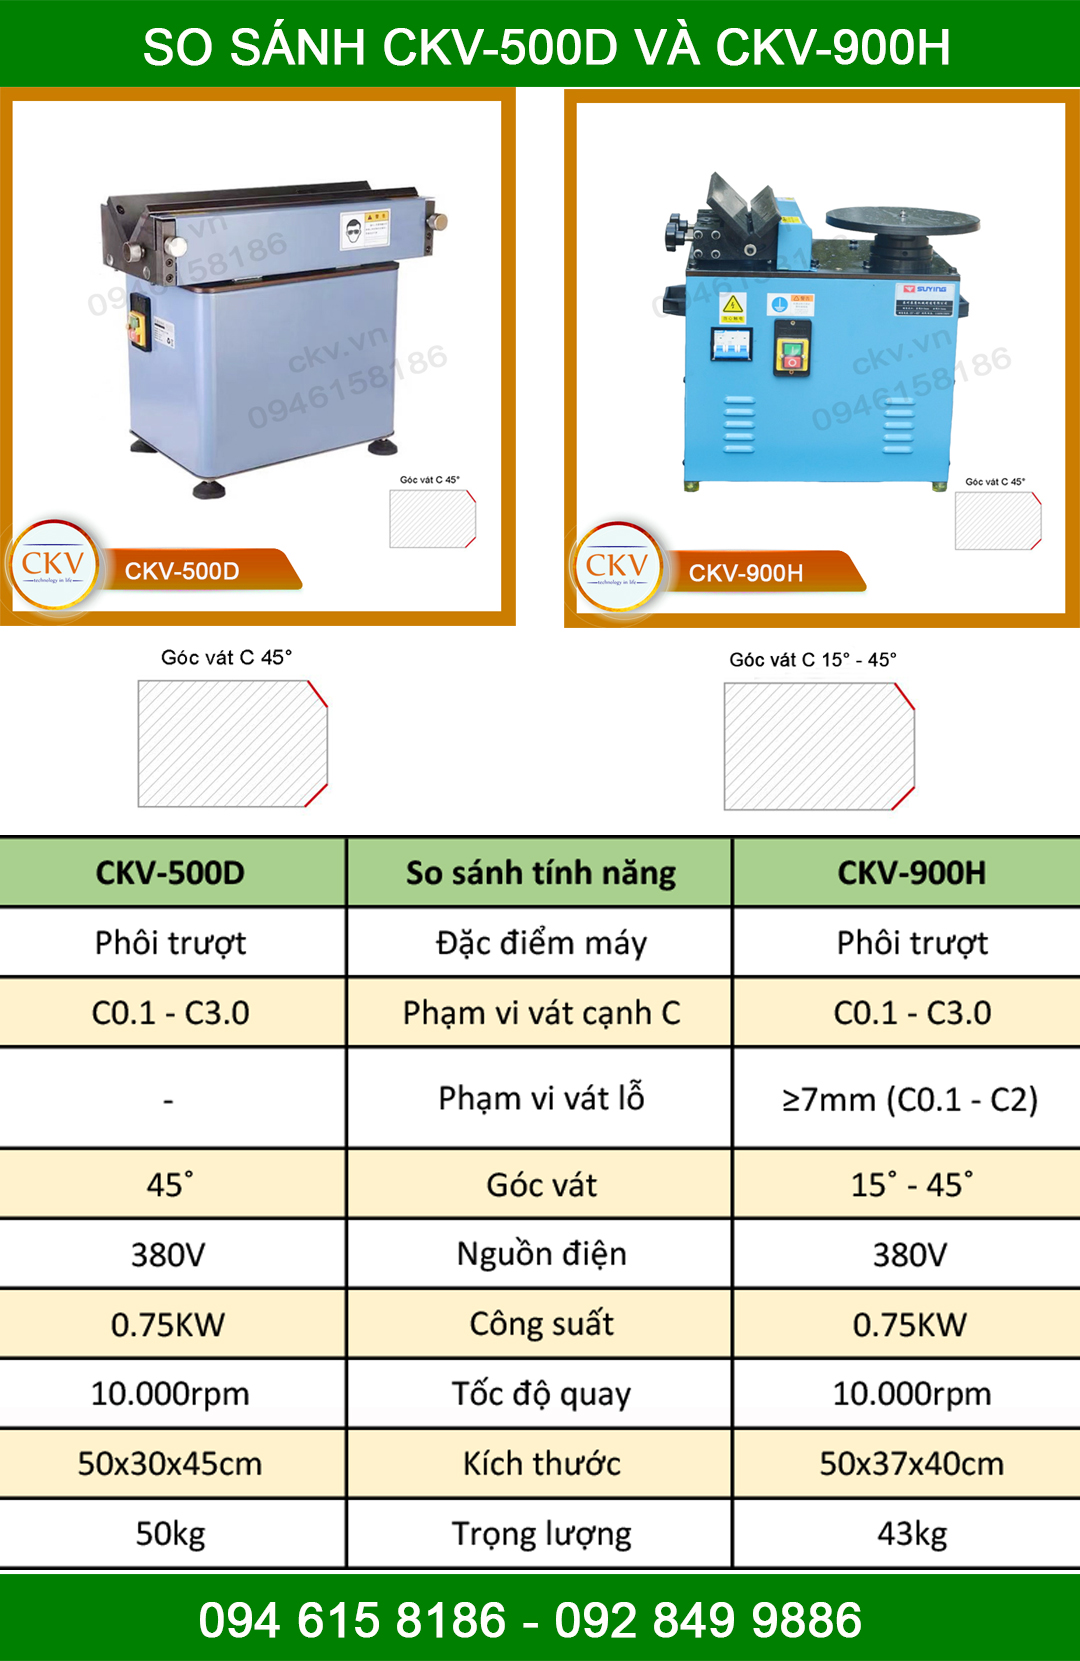 So sánh CKV-500D và CKV-900H